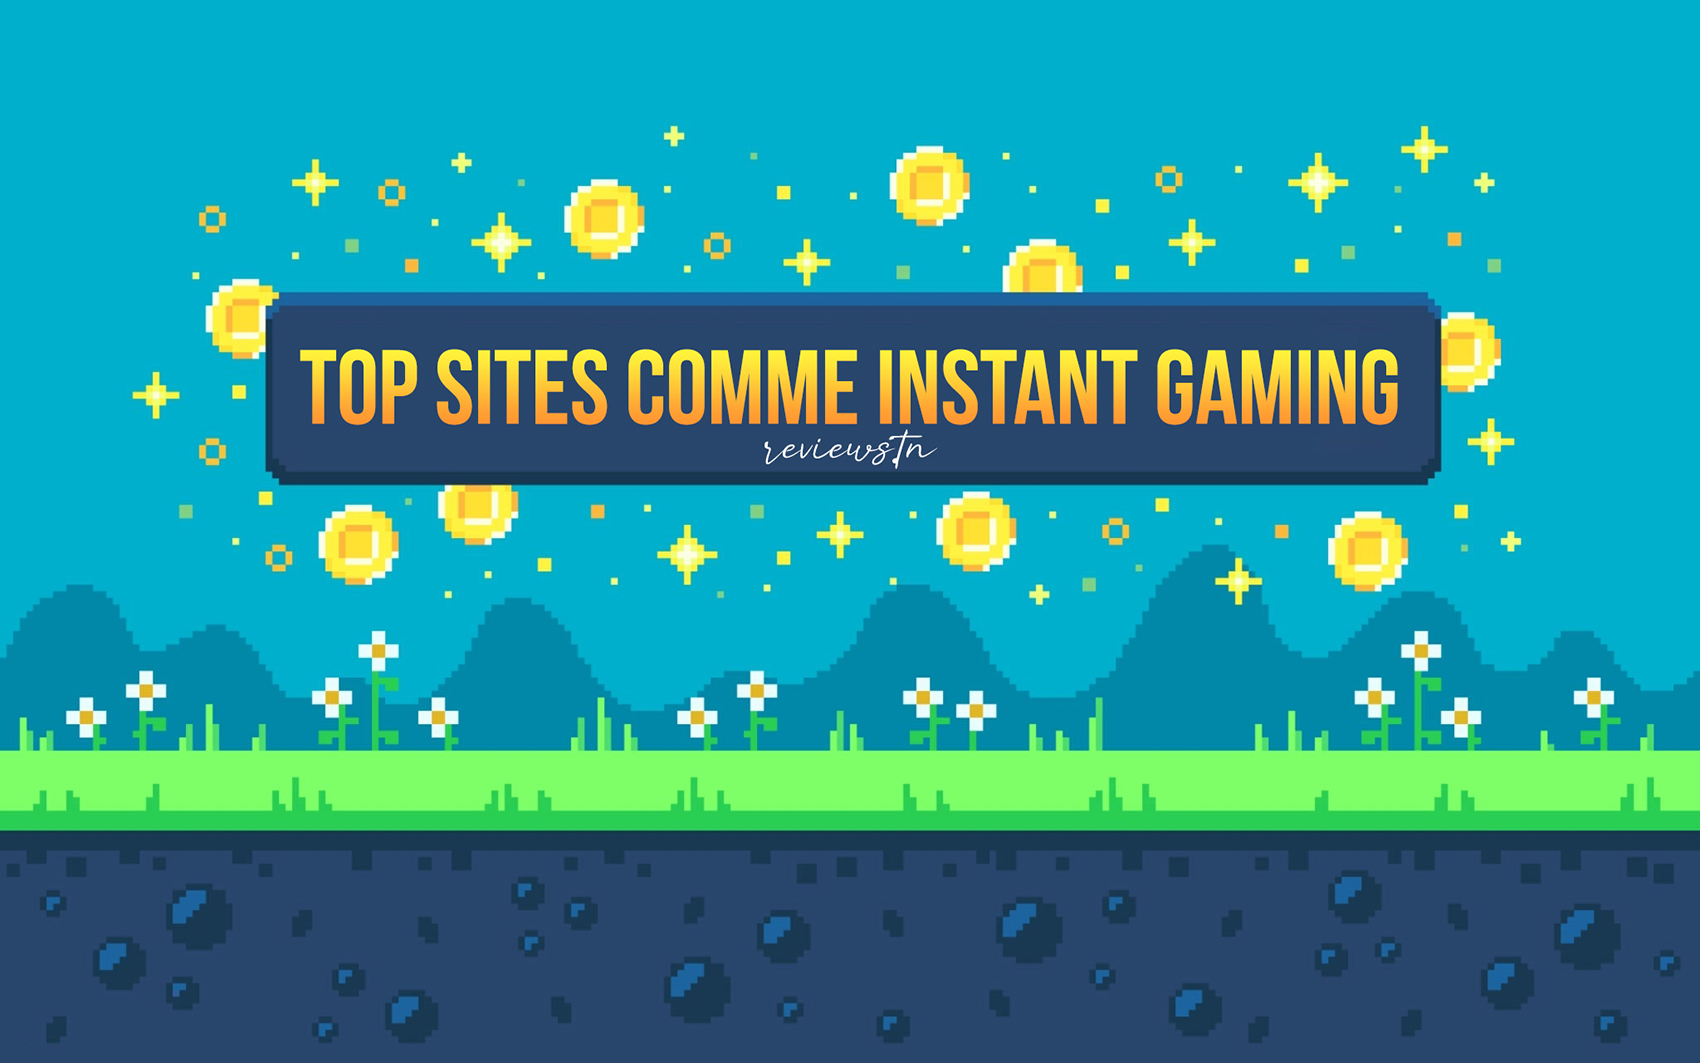 Sites comme Instant Gaming : 10 Meilleurs sites pour acheter des clés de jeux vidéo pas chers